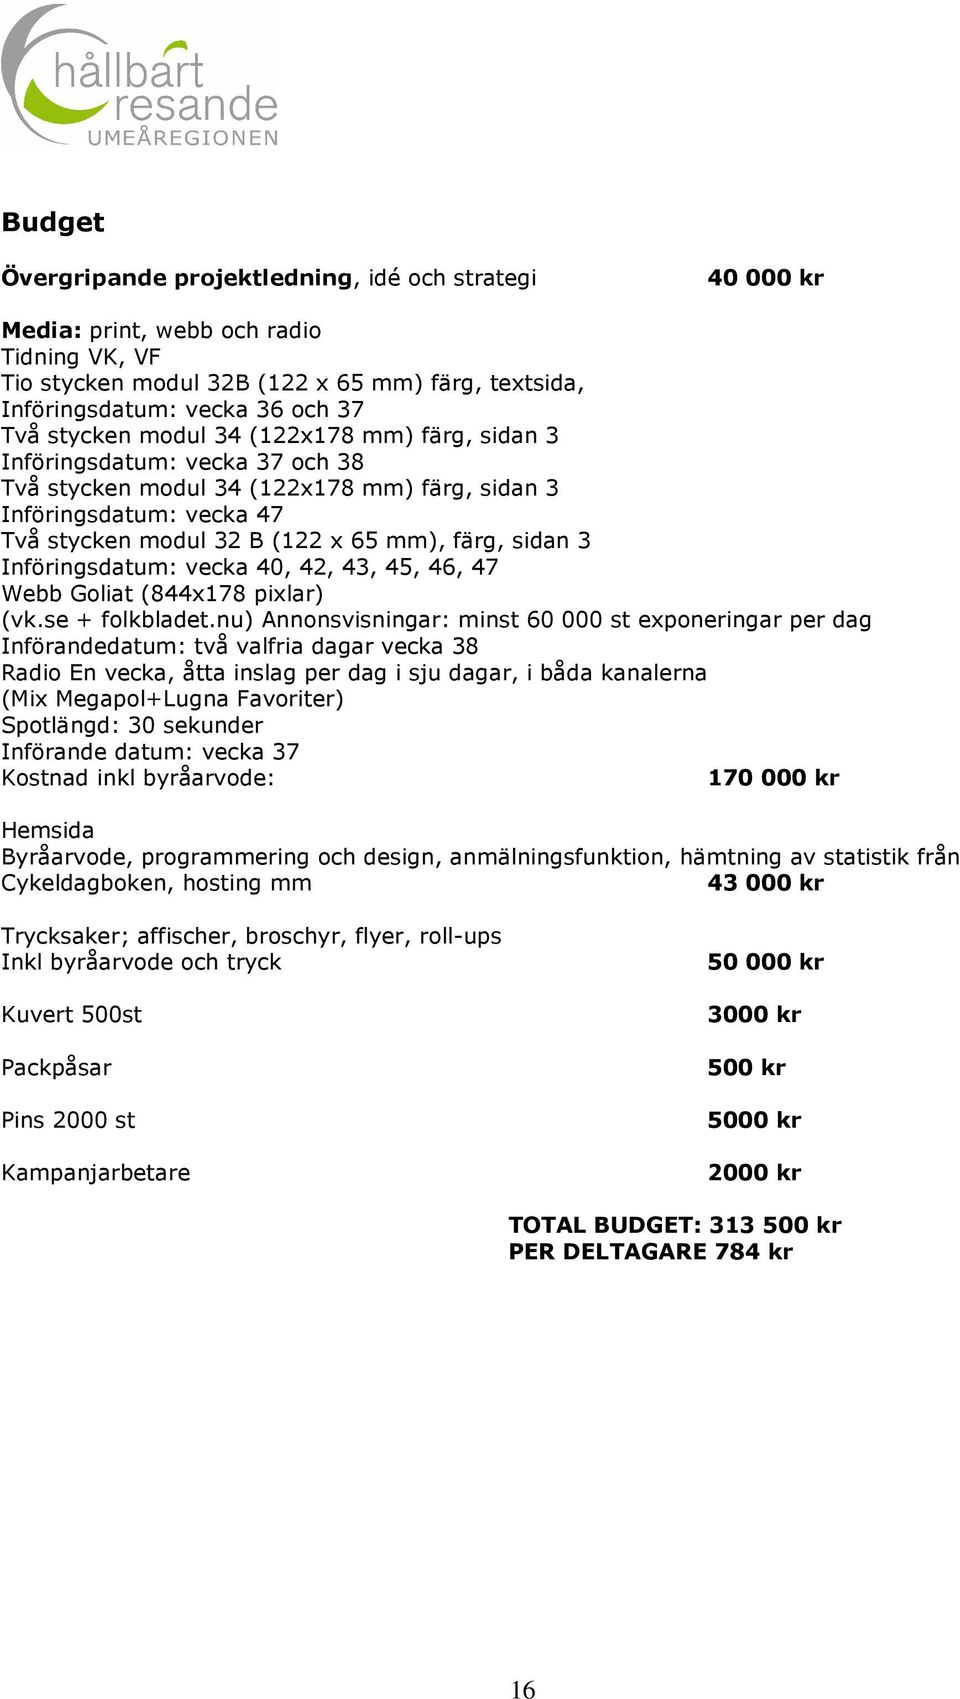 3 Införingsdatum: vecka 40, 42, 43, 45, 46, 47 Webb Goliat (844x178 pixlar) (vk.se + folkbladet.